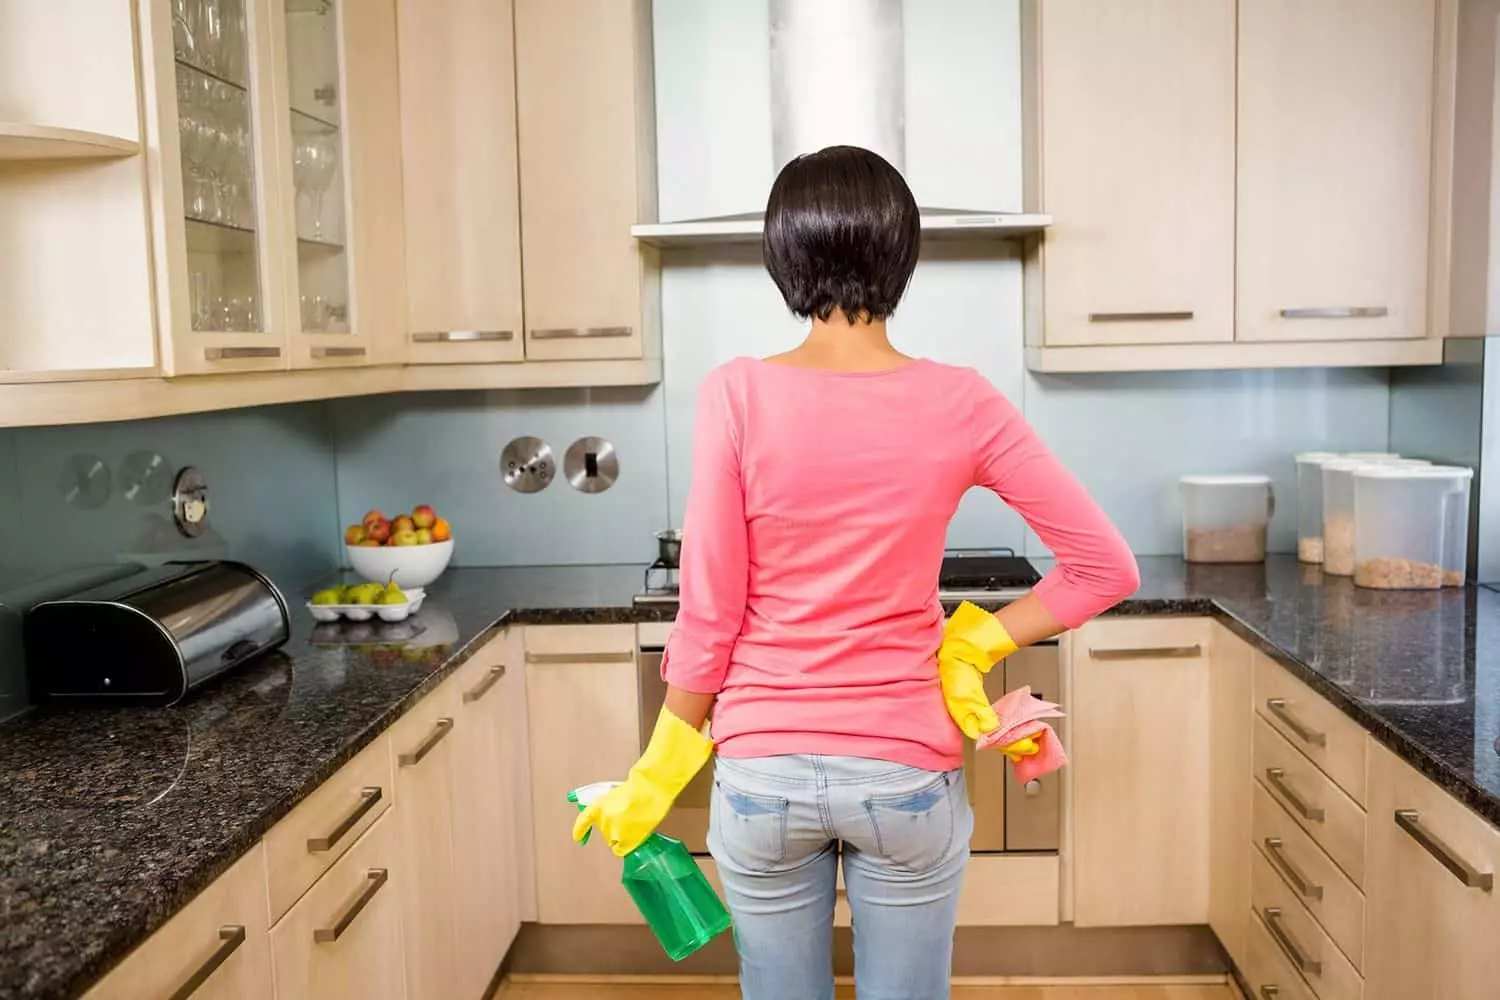 Καθαρισμός στο διαμέρισμα: Πώς να αφαιρέσετε στα δωμάτια και πού να ξεκινήσετε; Γρήγορο καθημερινό και εβδομαδιαίο καθαρισμό. Πώς να κάνετε ένα σχέδιο και να το περάσετε σωστά με τα χέρια σας; 11069_19